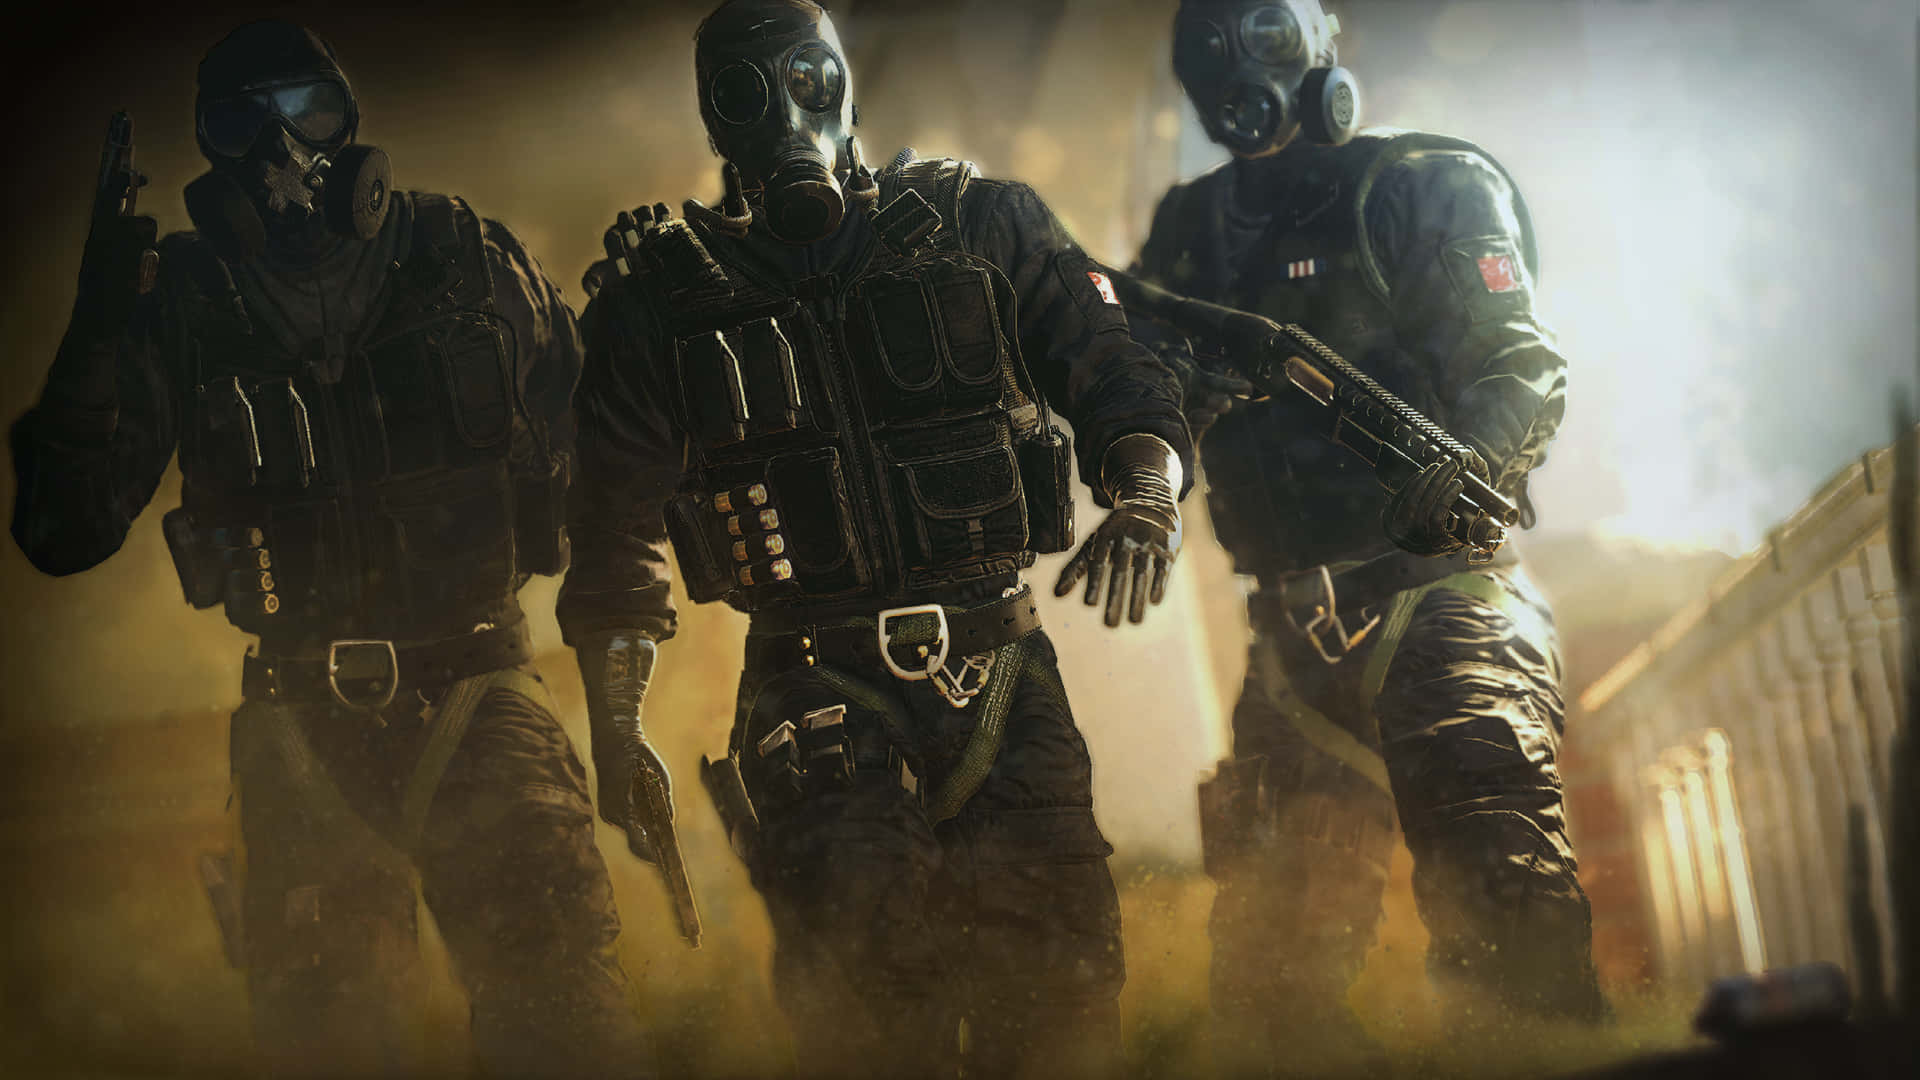 Elite Rainbow Six Siege Operators in Action Wallpaper